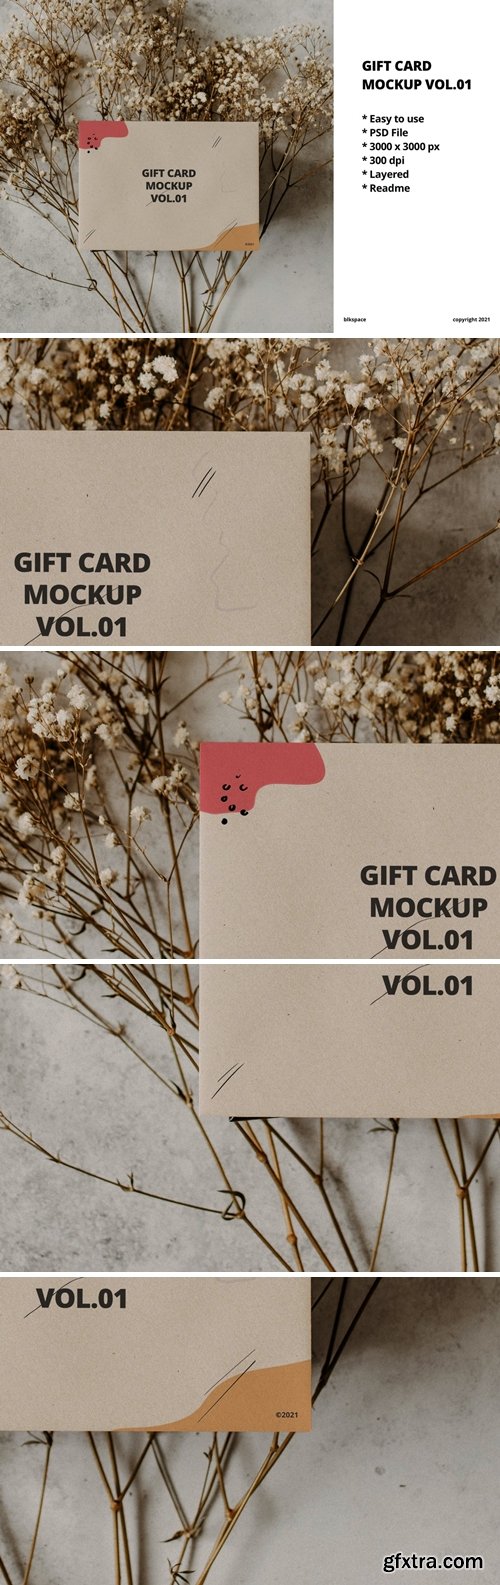 Gift Card Mockup Vol.01